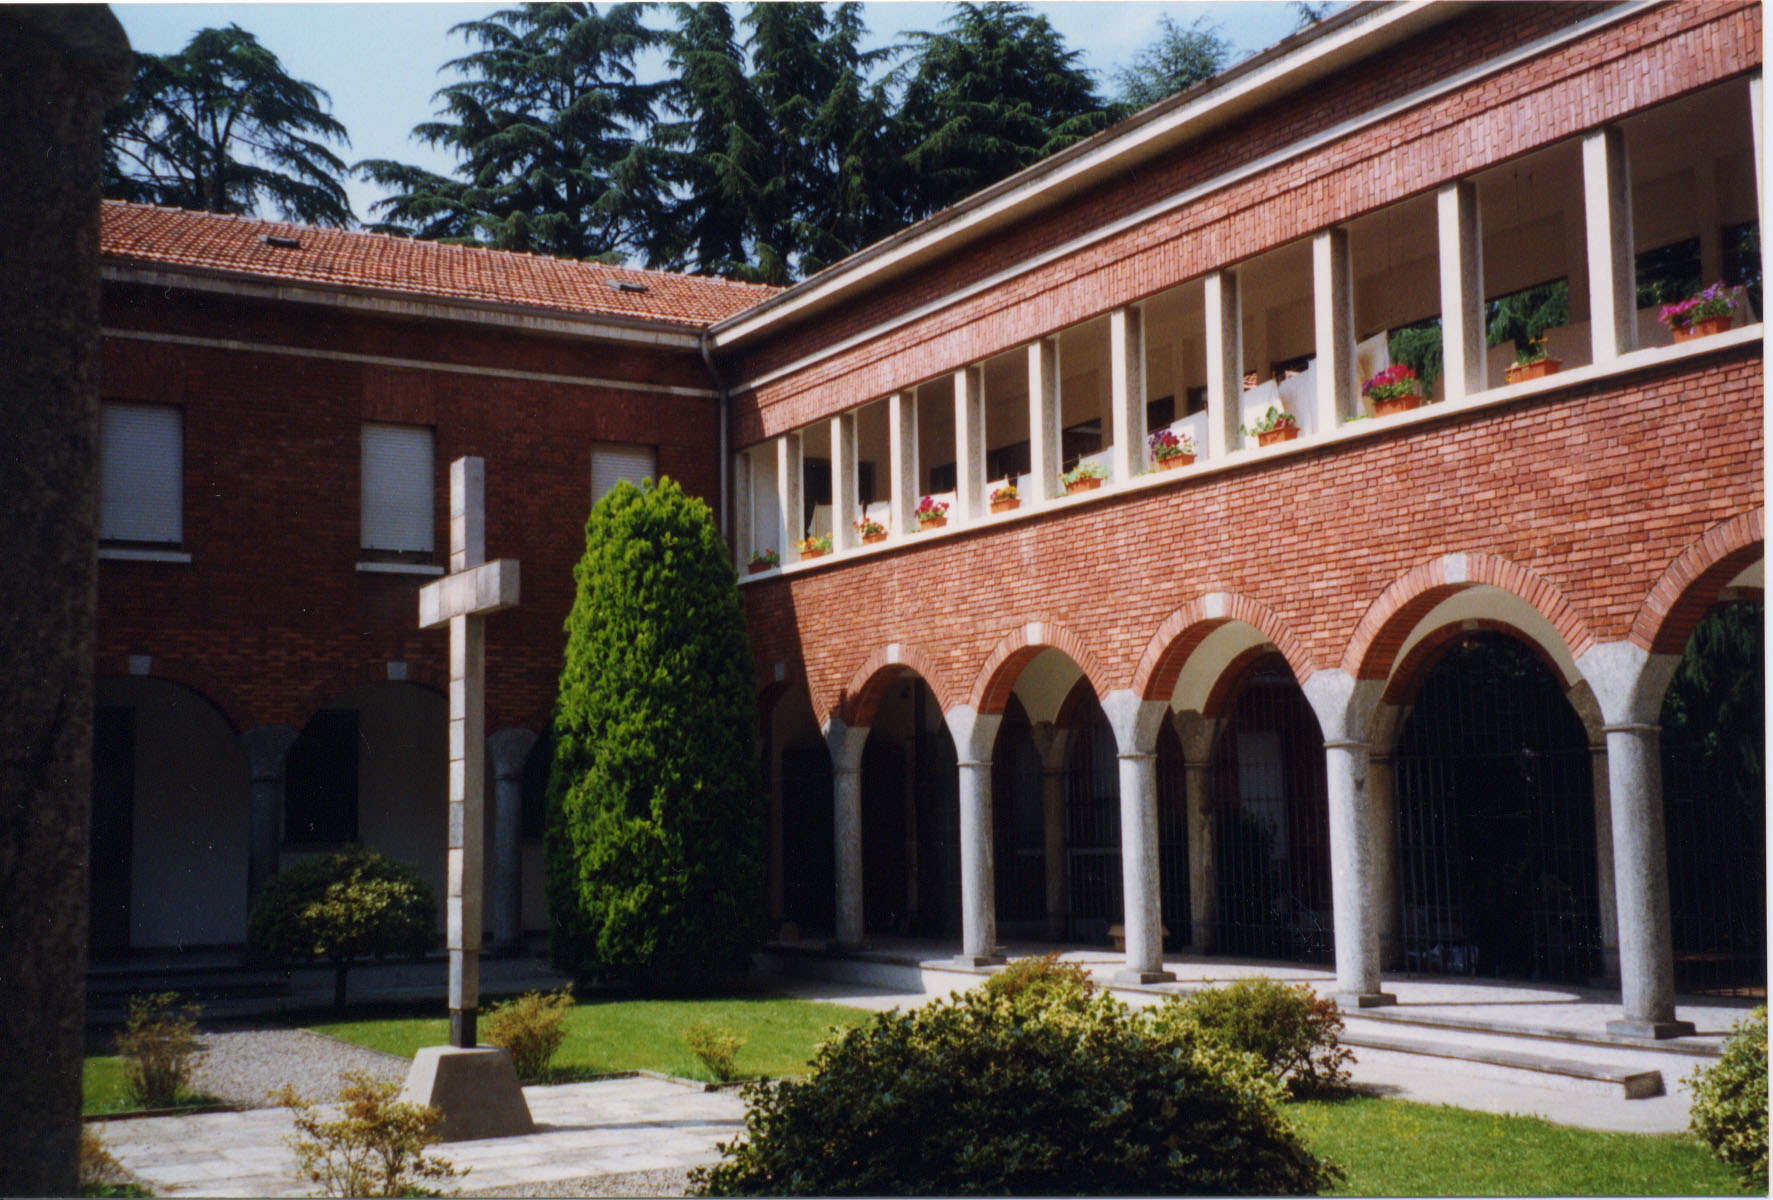 Chiostro del Monastero di Legnano